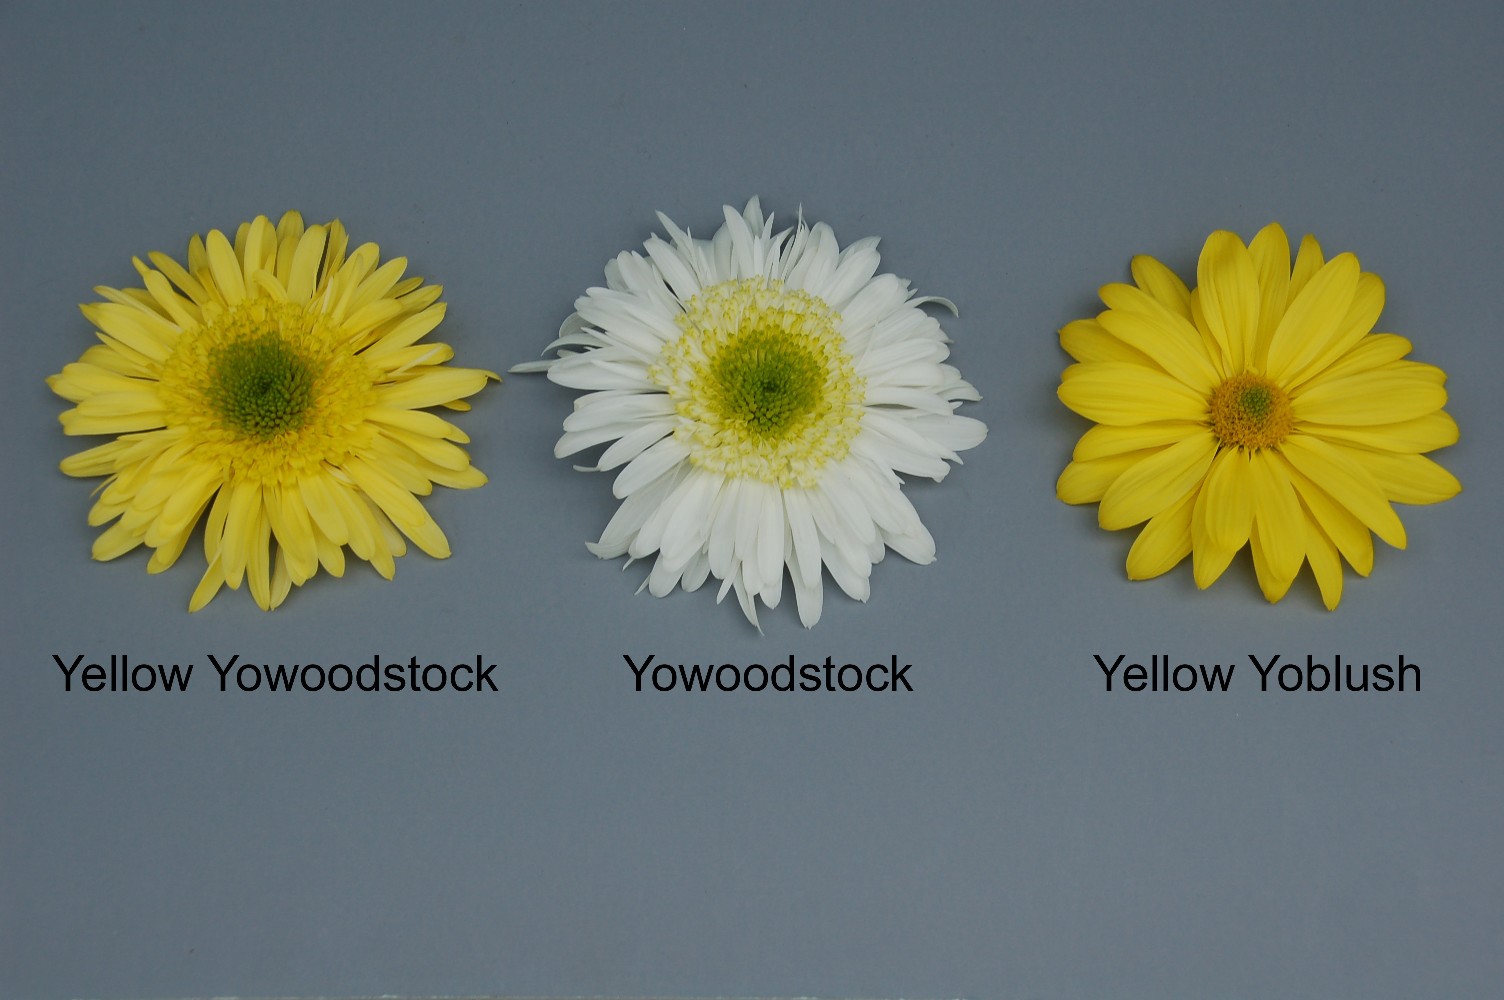 Yellow Yowoodstock